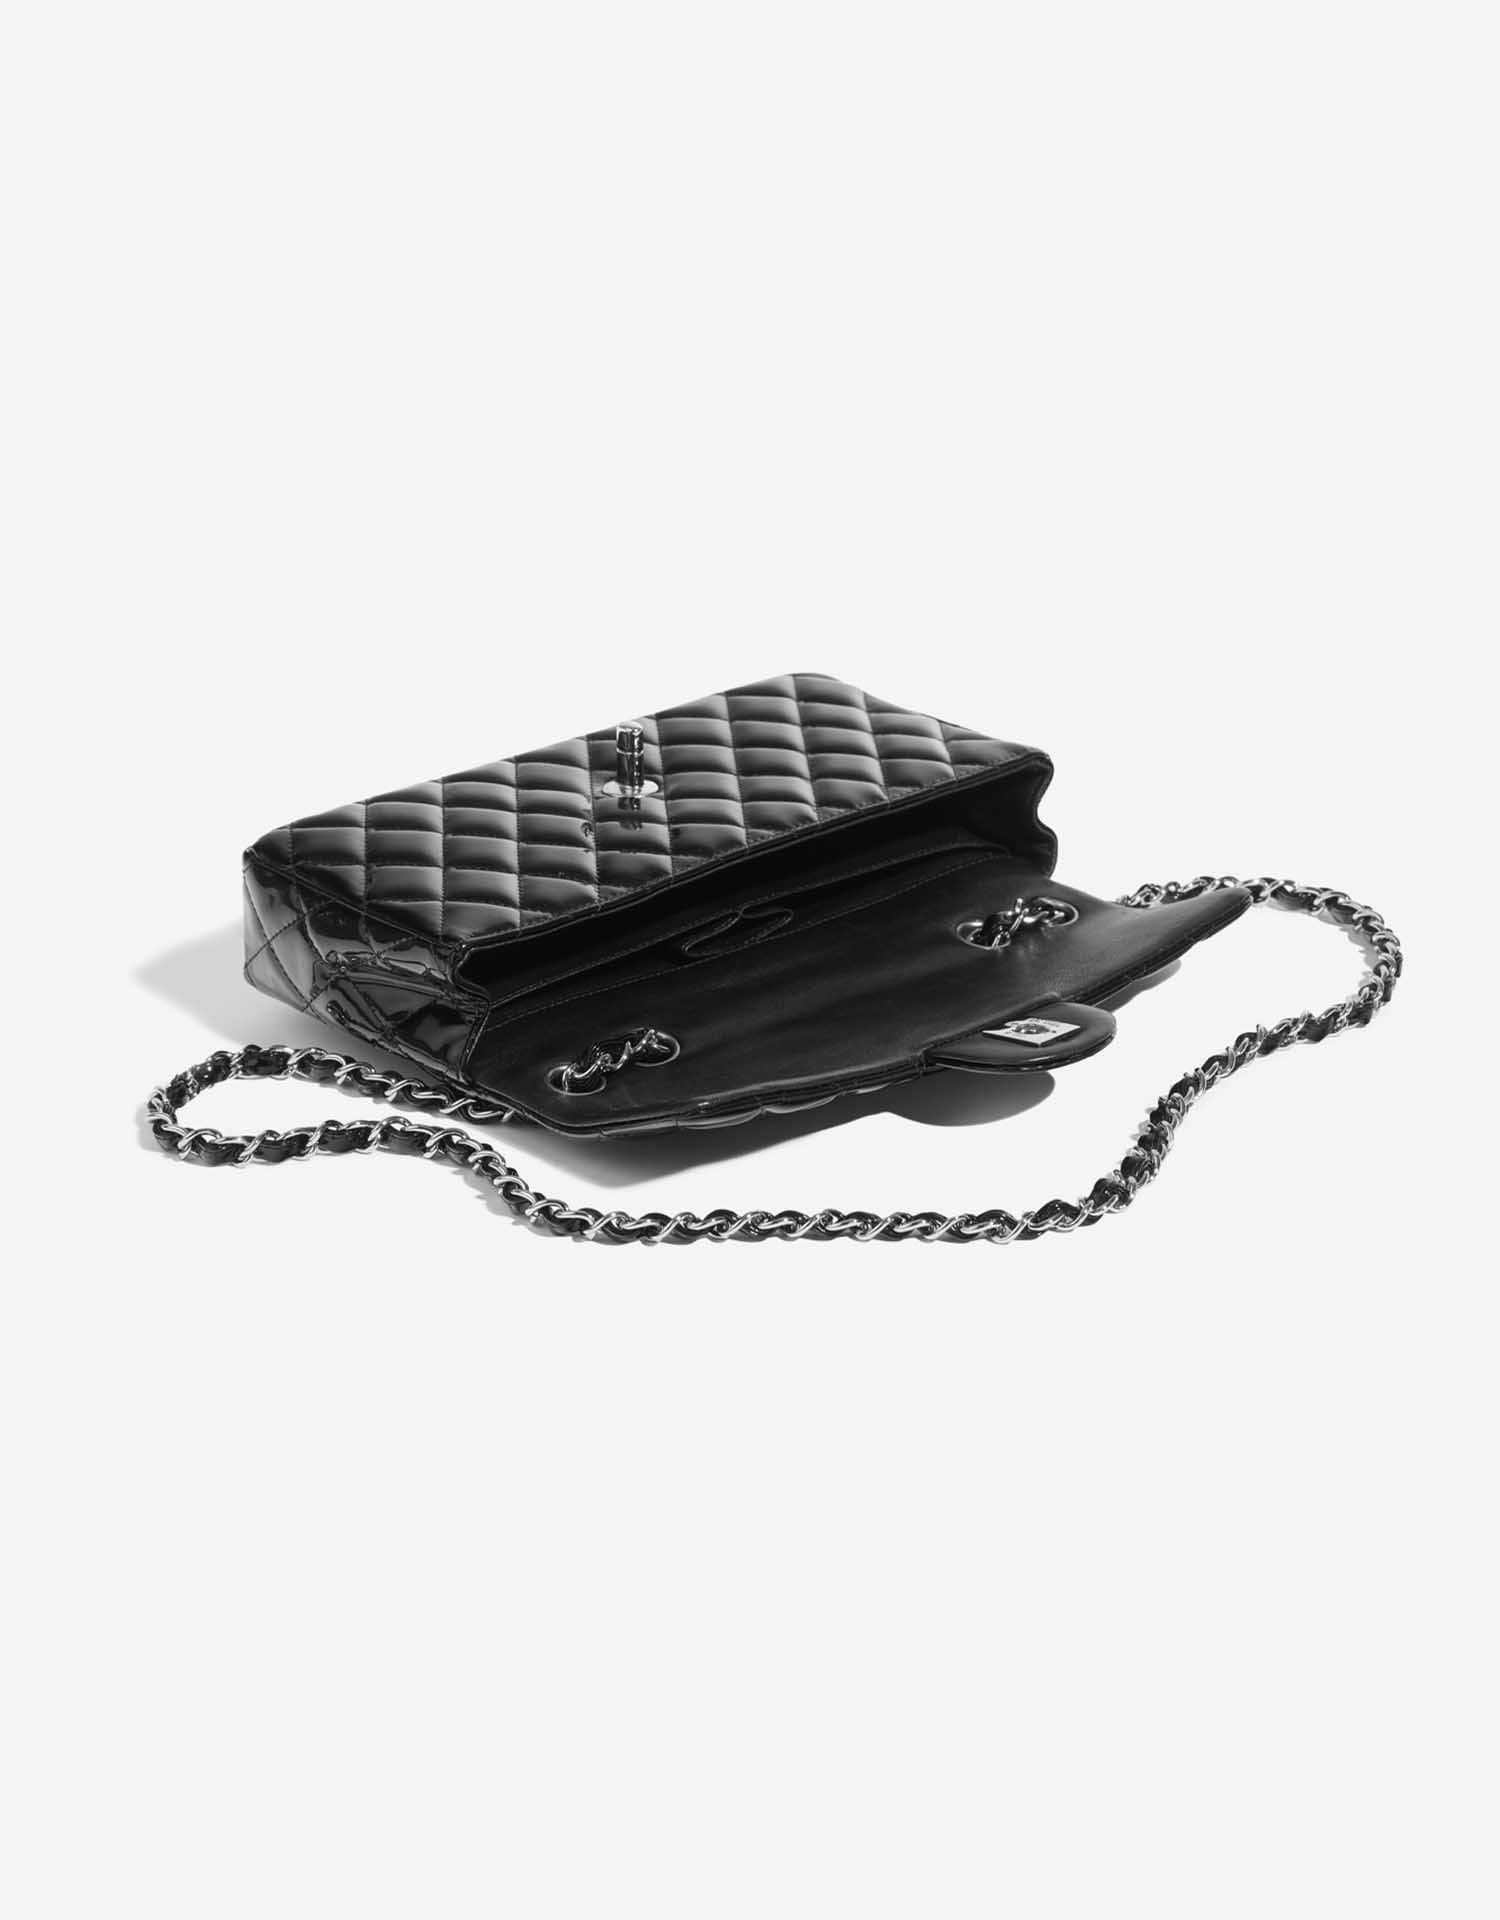 Chanel Timeless Medium Black Inside | Verkaufen Sie Ihre Designer-Tasche auf Saclab.com